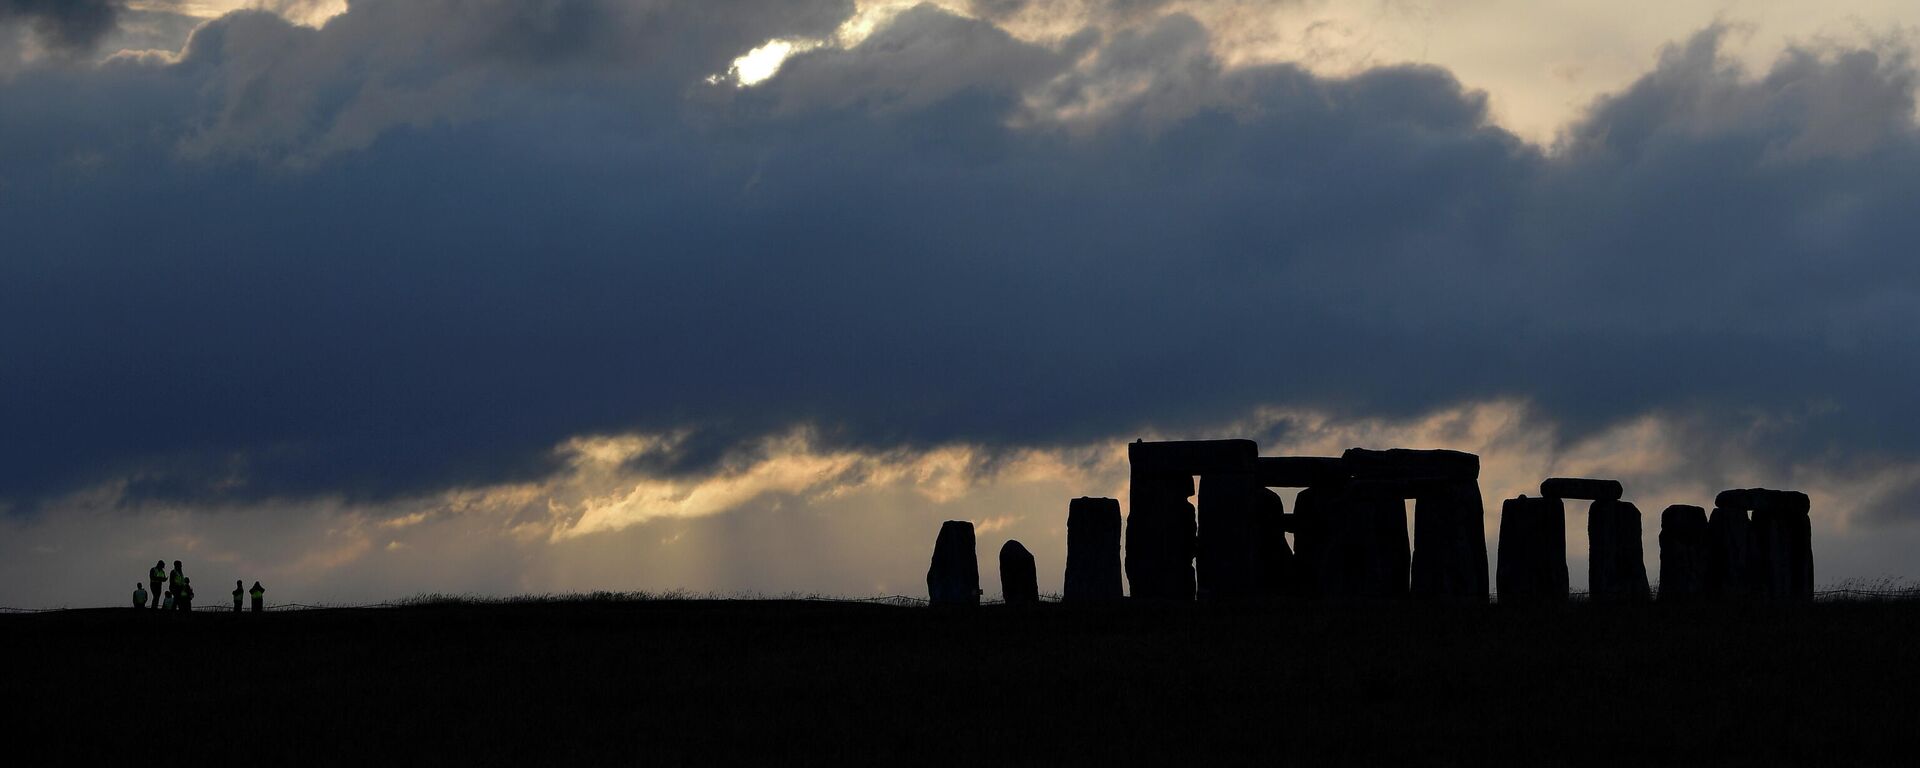 Stonehenge, monumental santuario neolítico en el Reino Unido - Sputnik Mundo, 1920, 06.08.2021